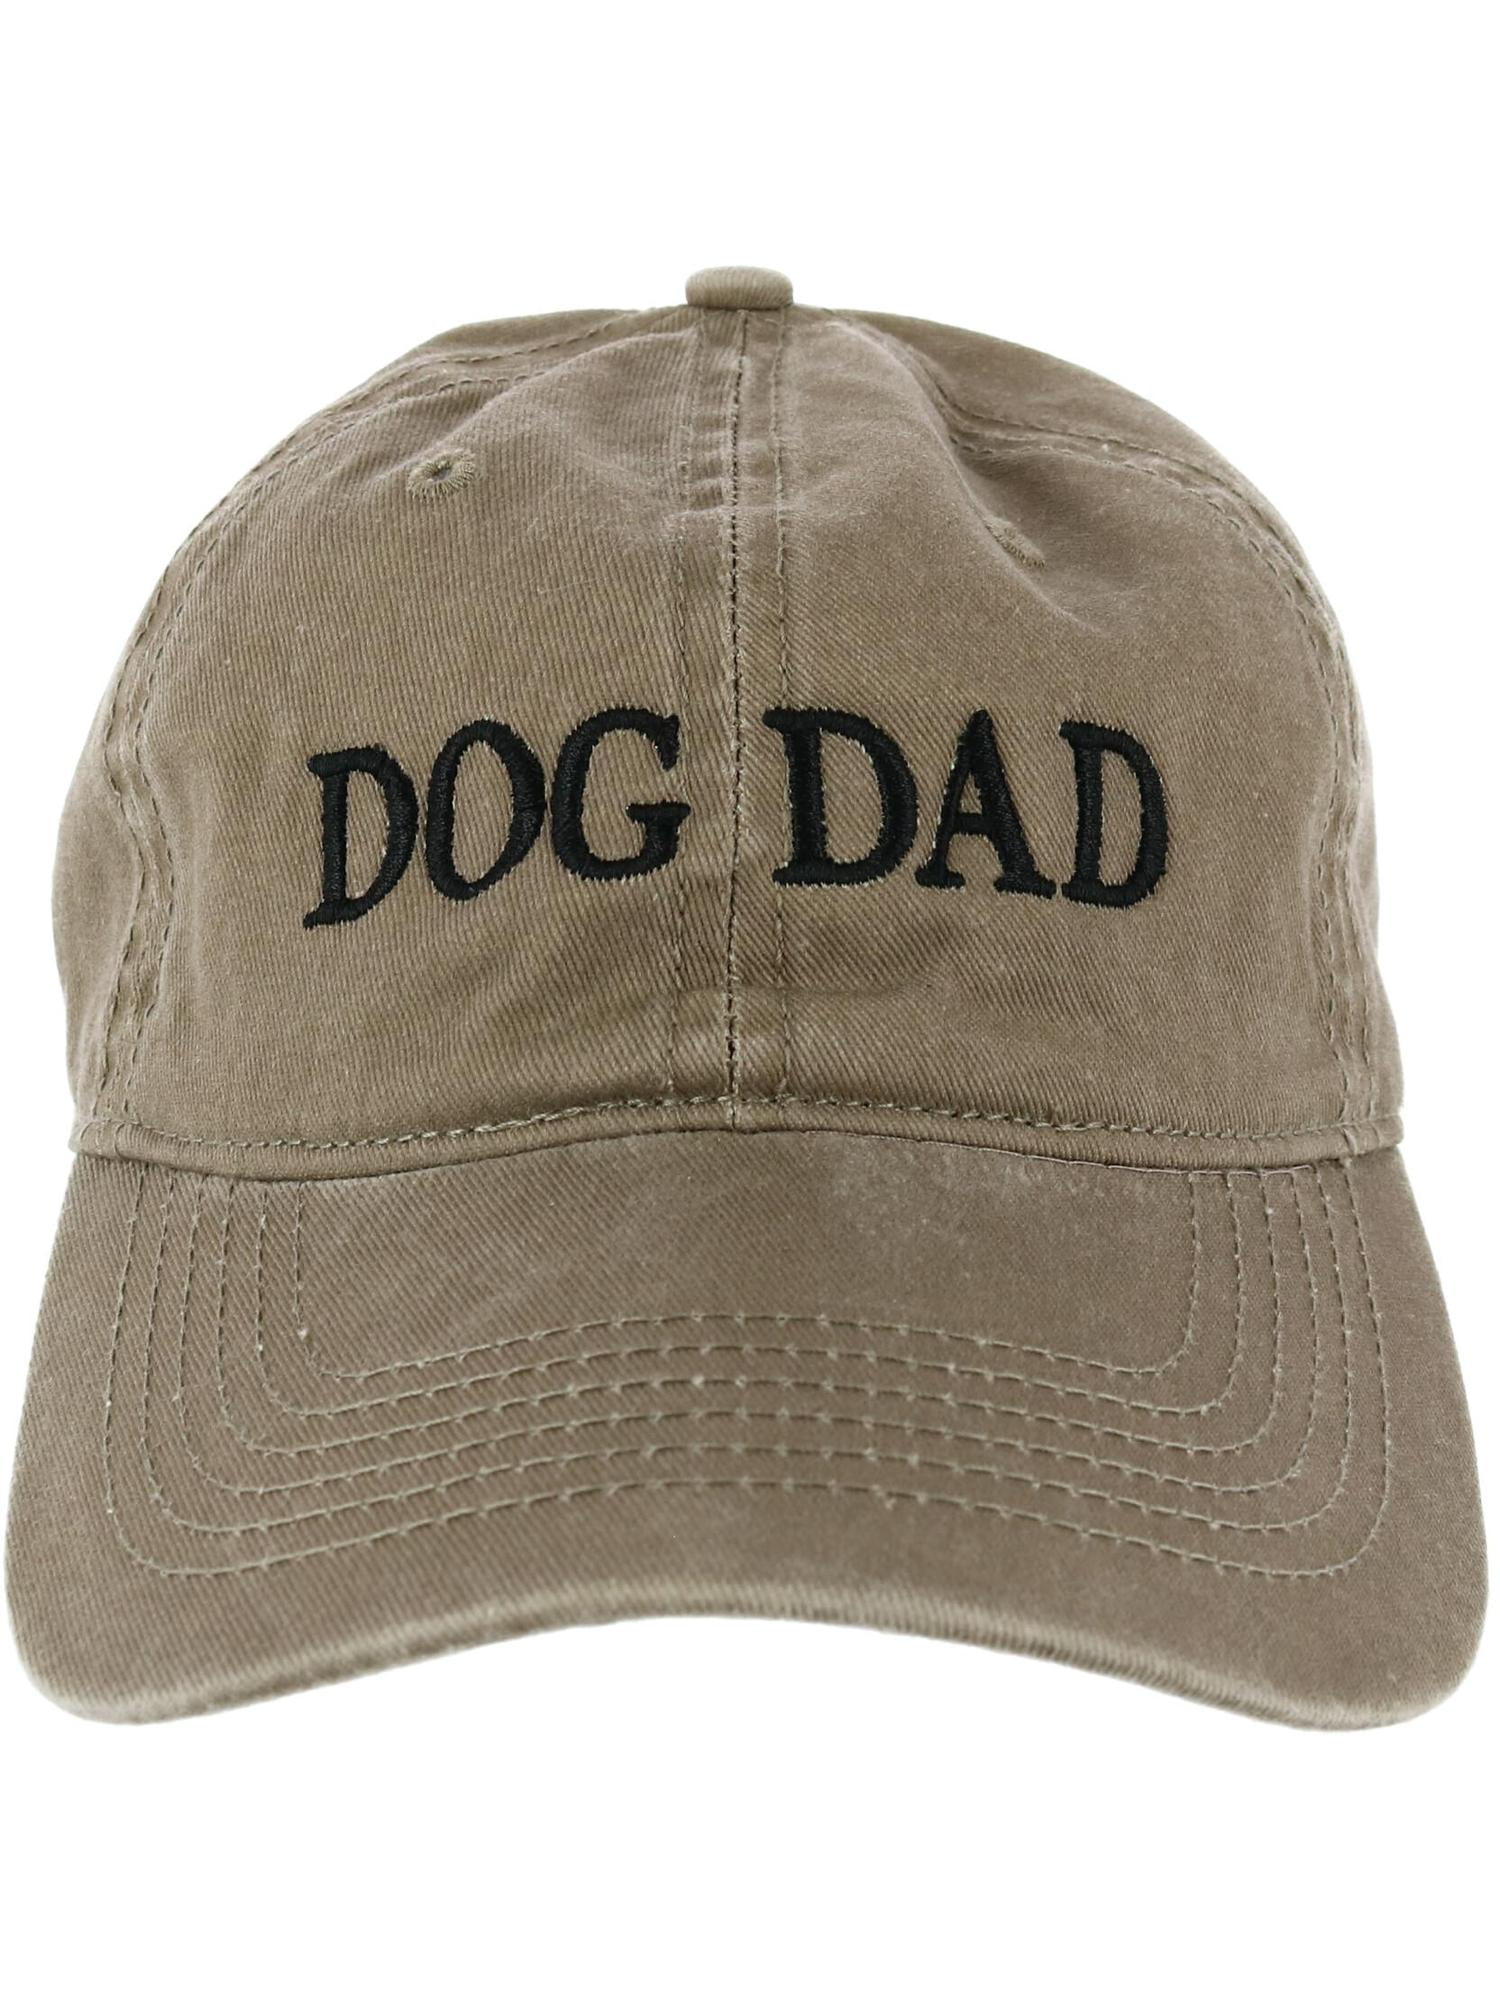 Waldeal Men's Dog Dad Washed Adjustable Baseball Cap Dog Lover Hat 